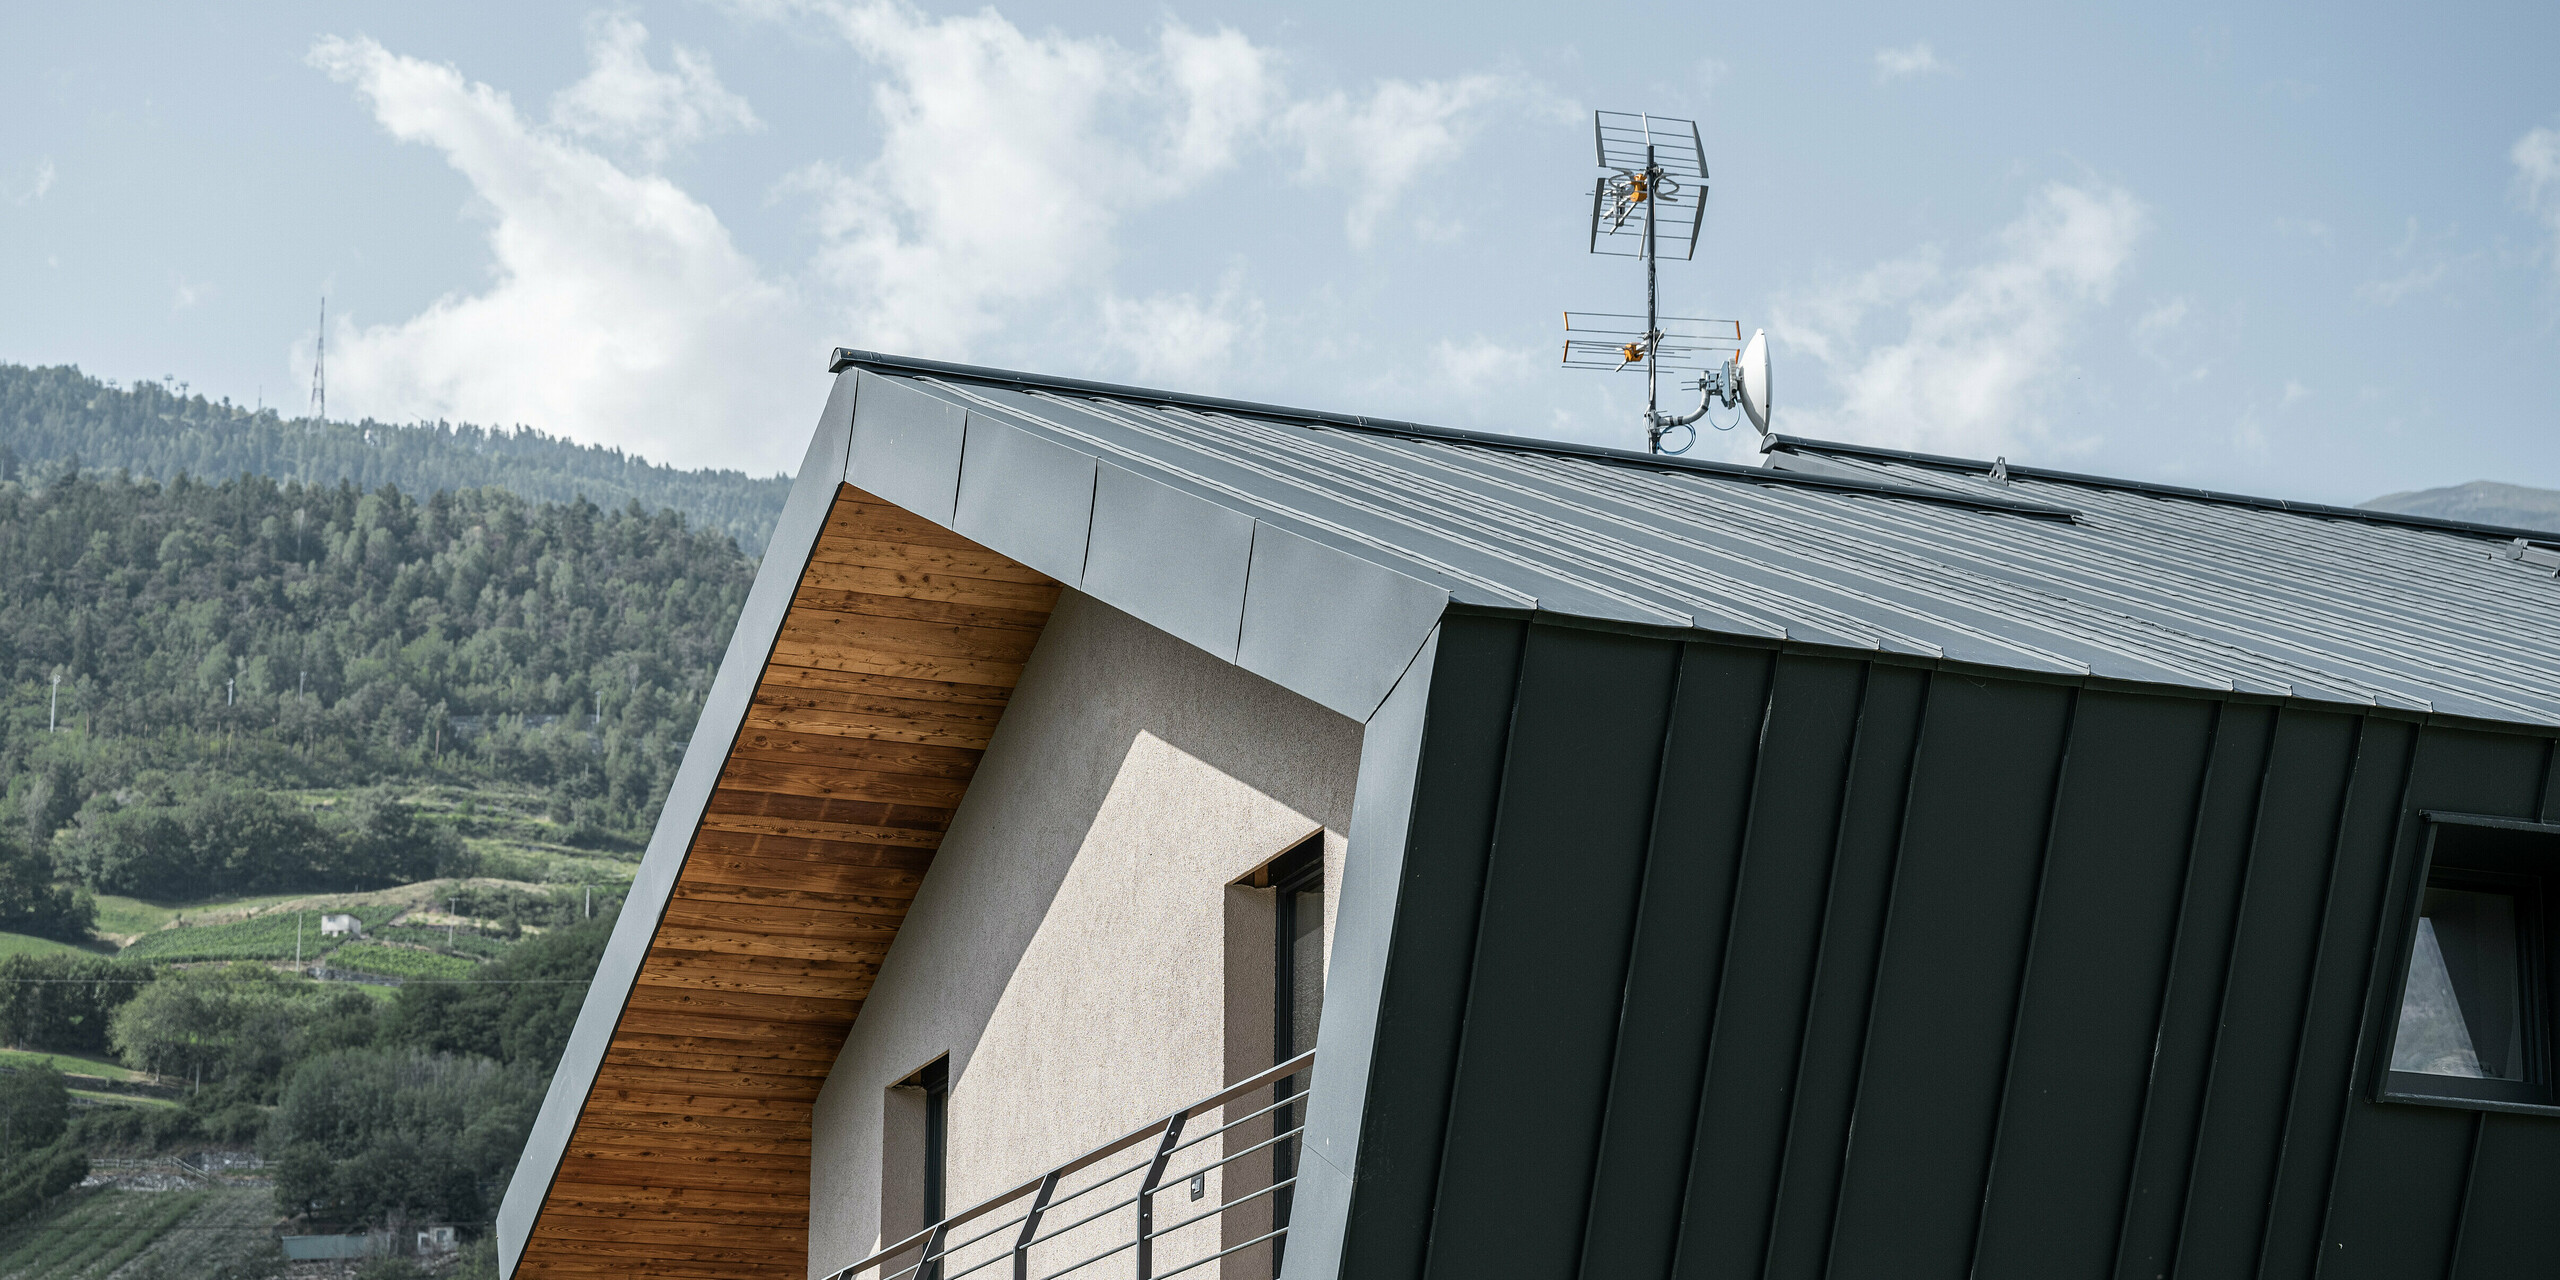 Seitenansicht der Villa Tia in Italien mit einem schlichten Satteldach. Die Stehfalzdeckung aus Aluminium zieht sich in unterschiedlichen Scharenbreiten über die Traufe bis zur Fassade. Umgesetzt wurde die Verkleidung mit PREFALZ in der eleganten Farbe P.10 Anthrazit. Die sichtbaren Holzelemente unter dem Dachüberstand verleihen der Architektur Wärme und Naturverbundenheit, während die präzise verlegten Aluminiumelemente für eine moderne, langlebige und wartungsarme Außenhaut sorgen.